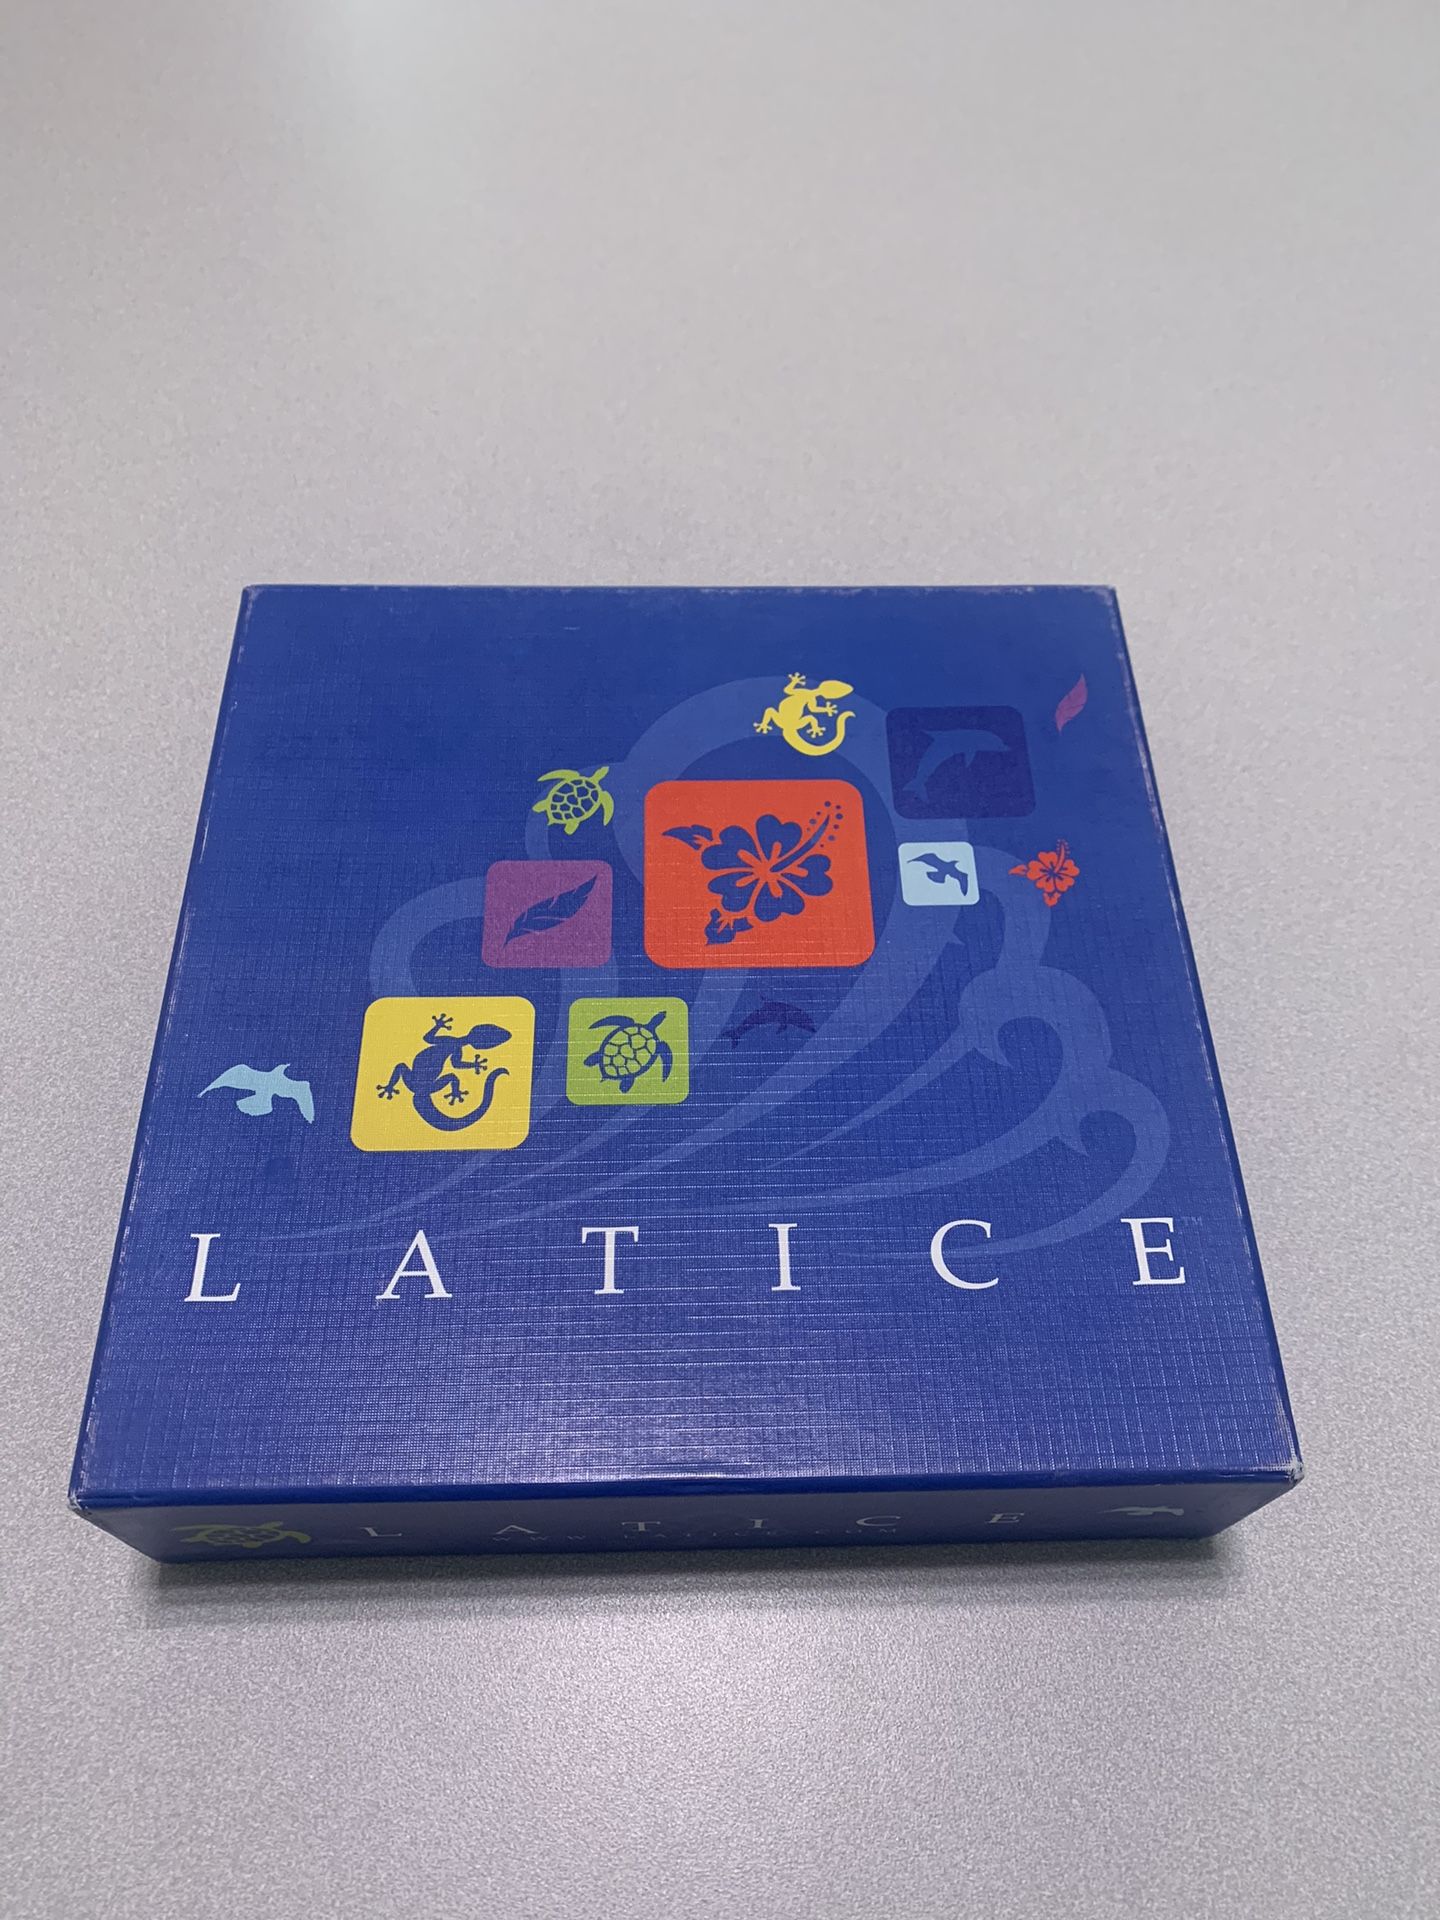 Lattice Board Game 